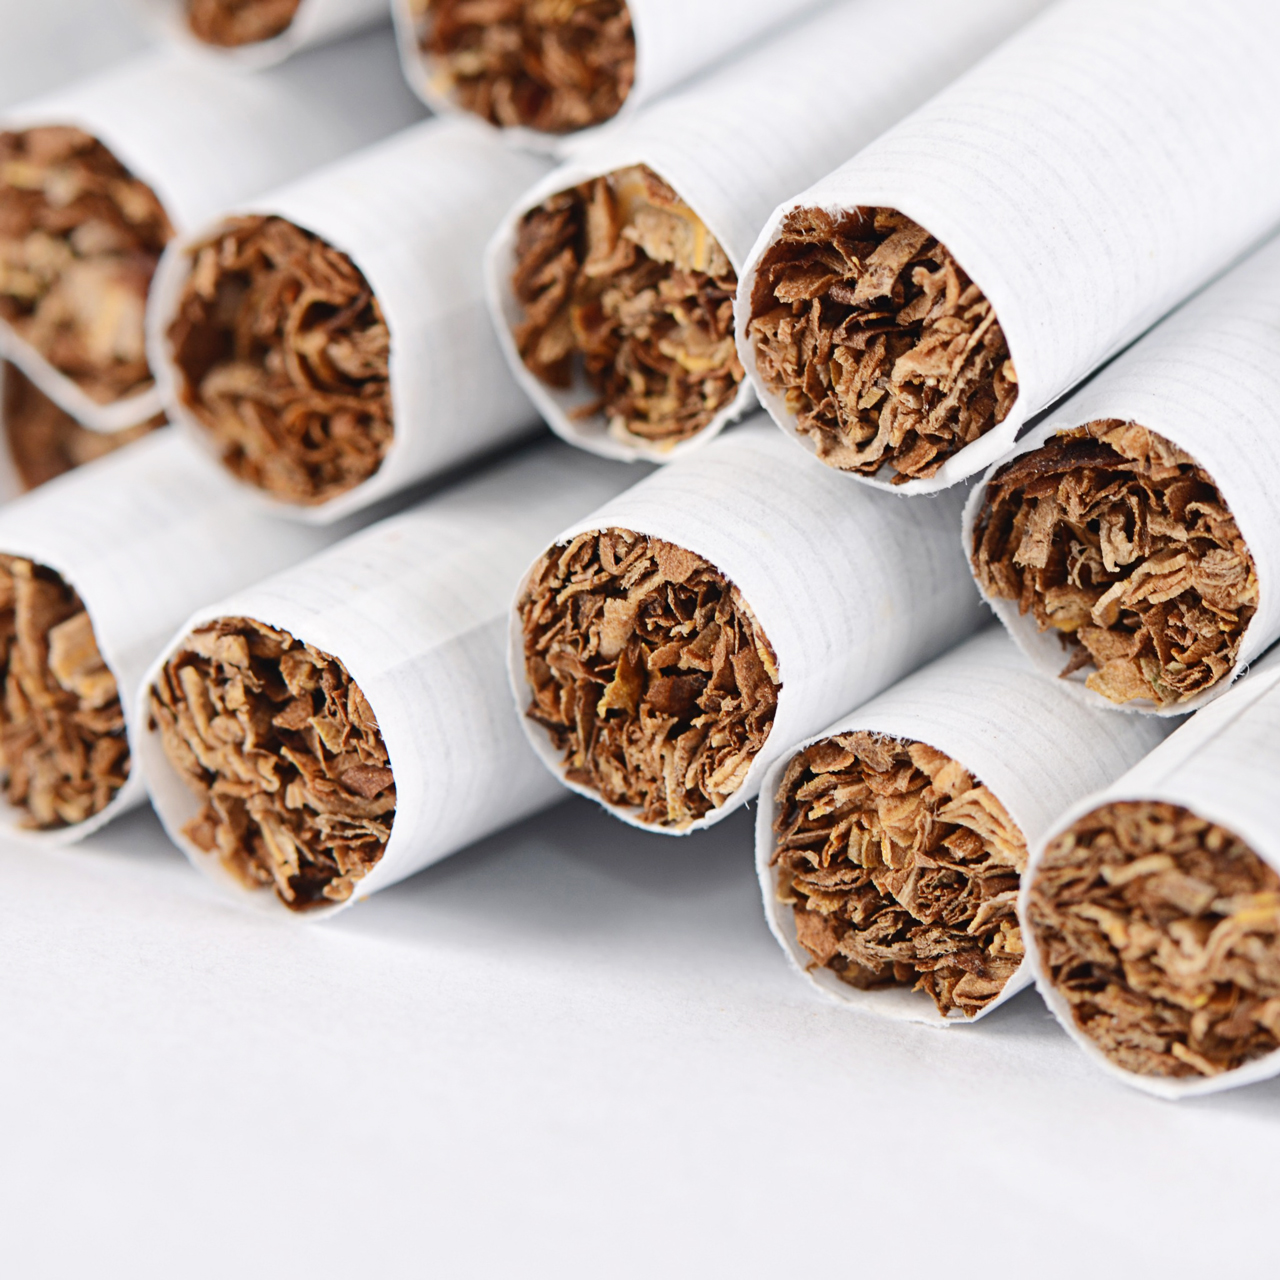 烟草产品管制法案｜禁卖烟品予未成年者 初犯罚2万或监1年